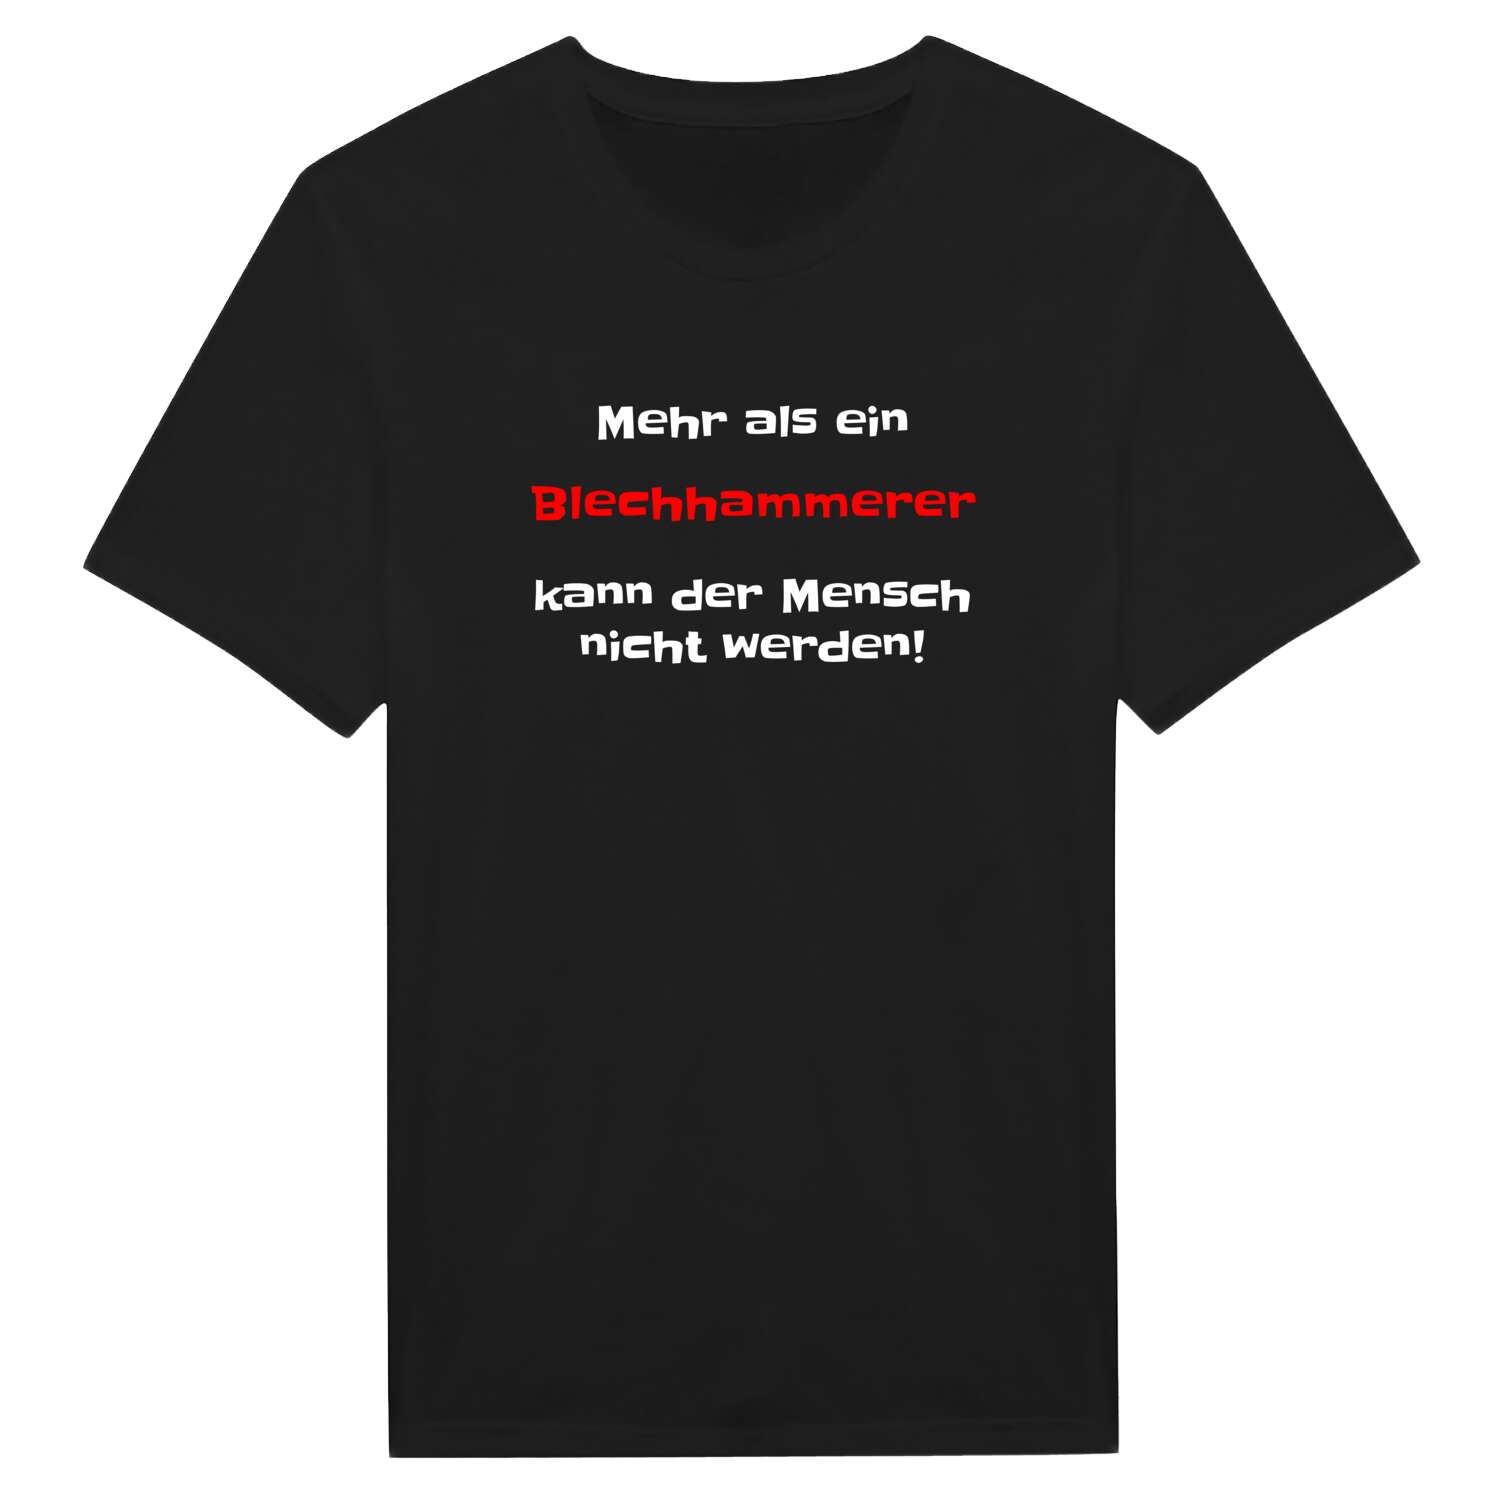 Blechhammer T-Shirt »Mehr als ein«